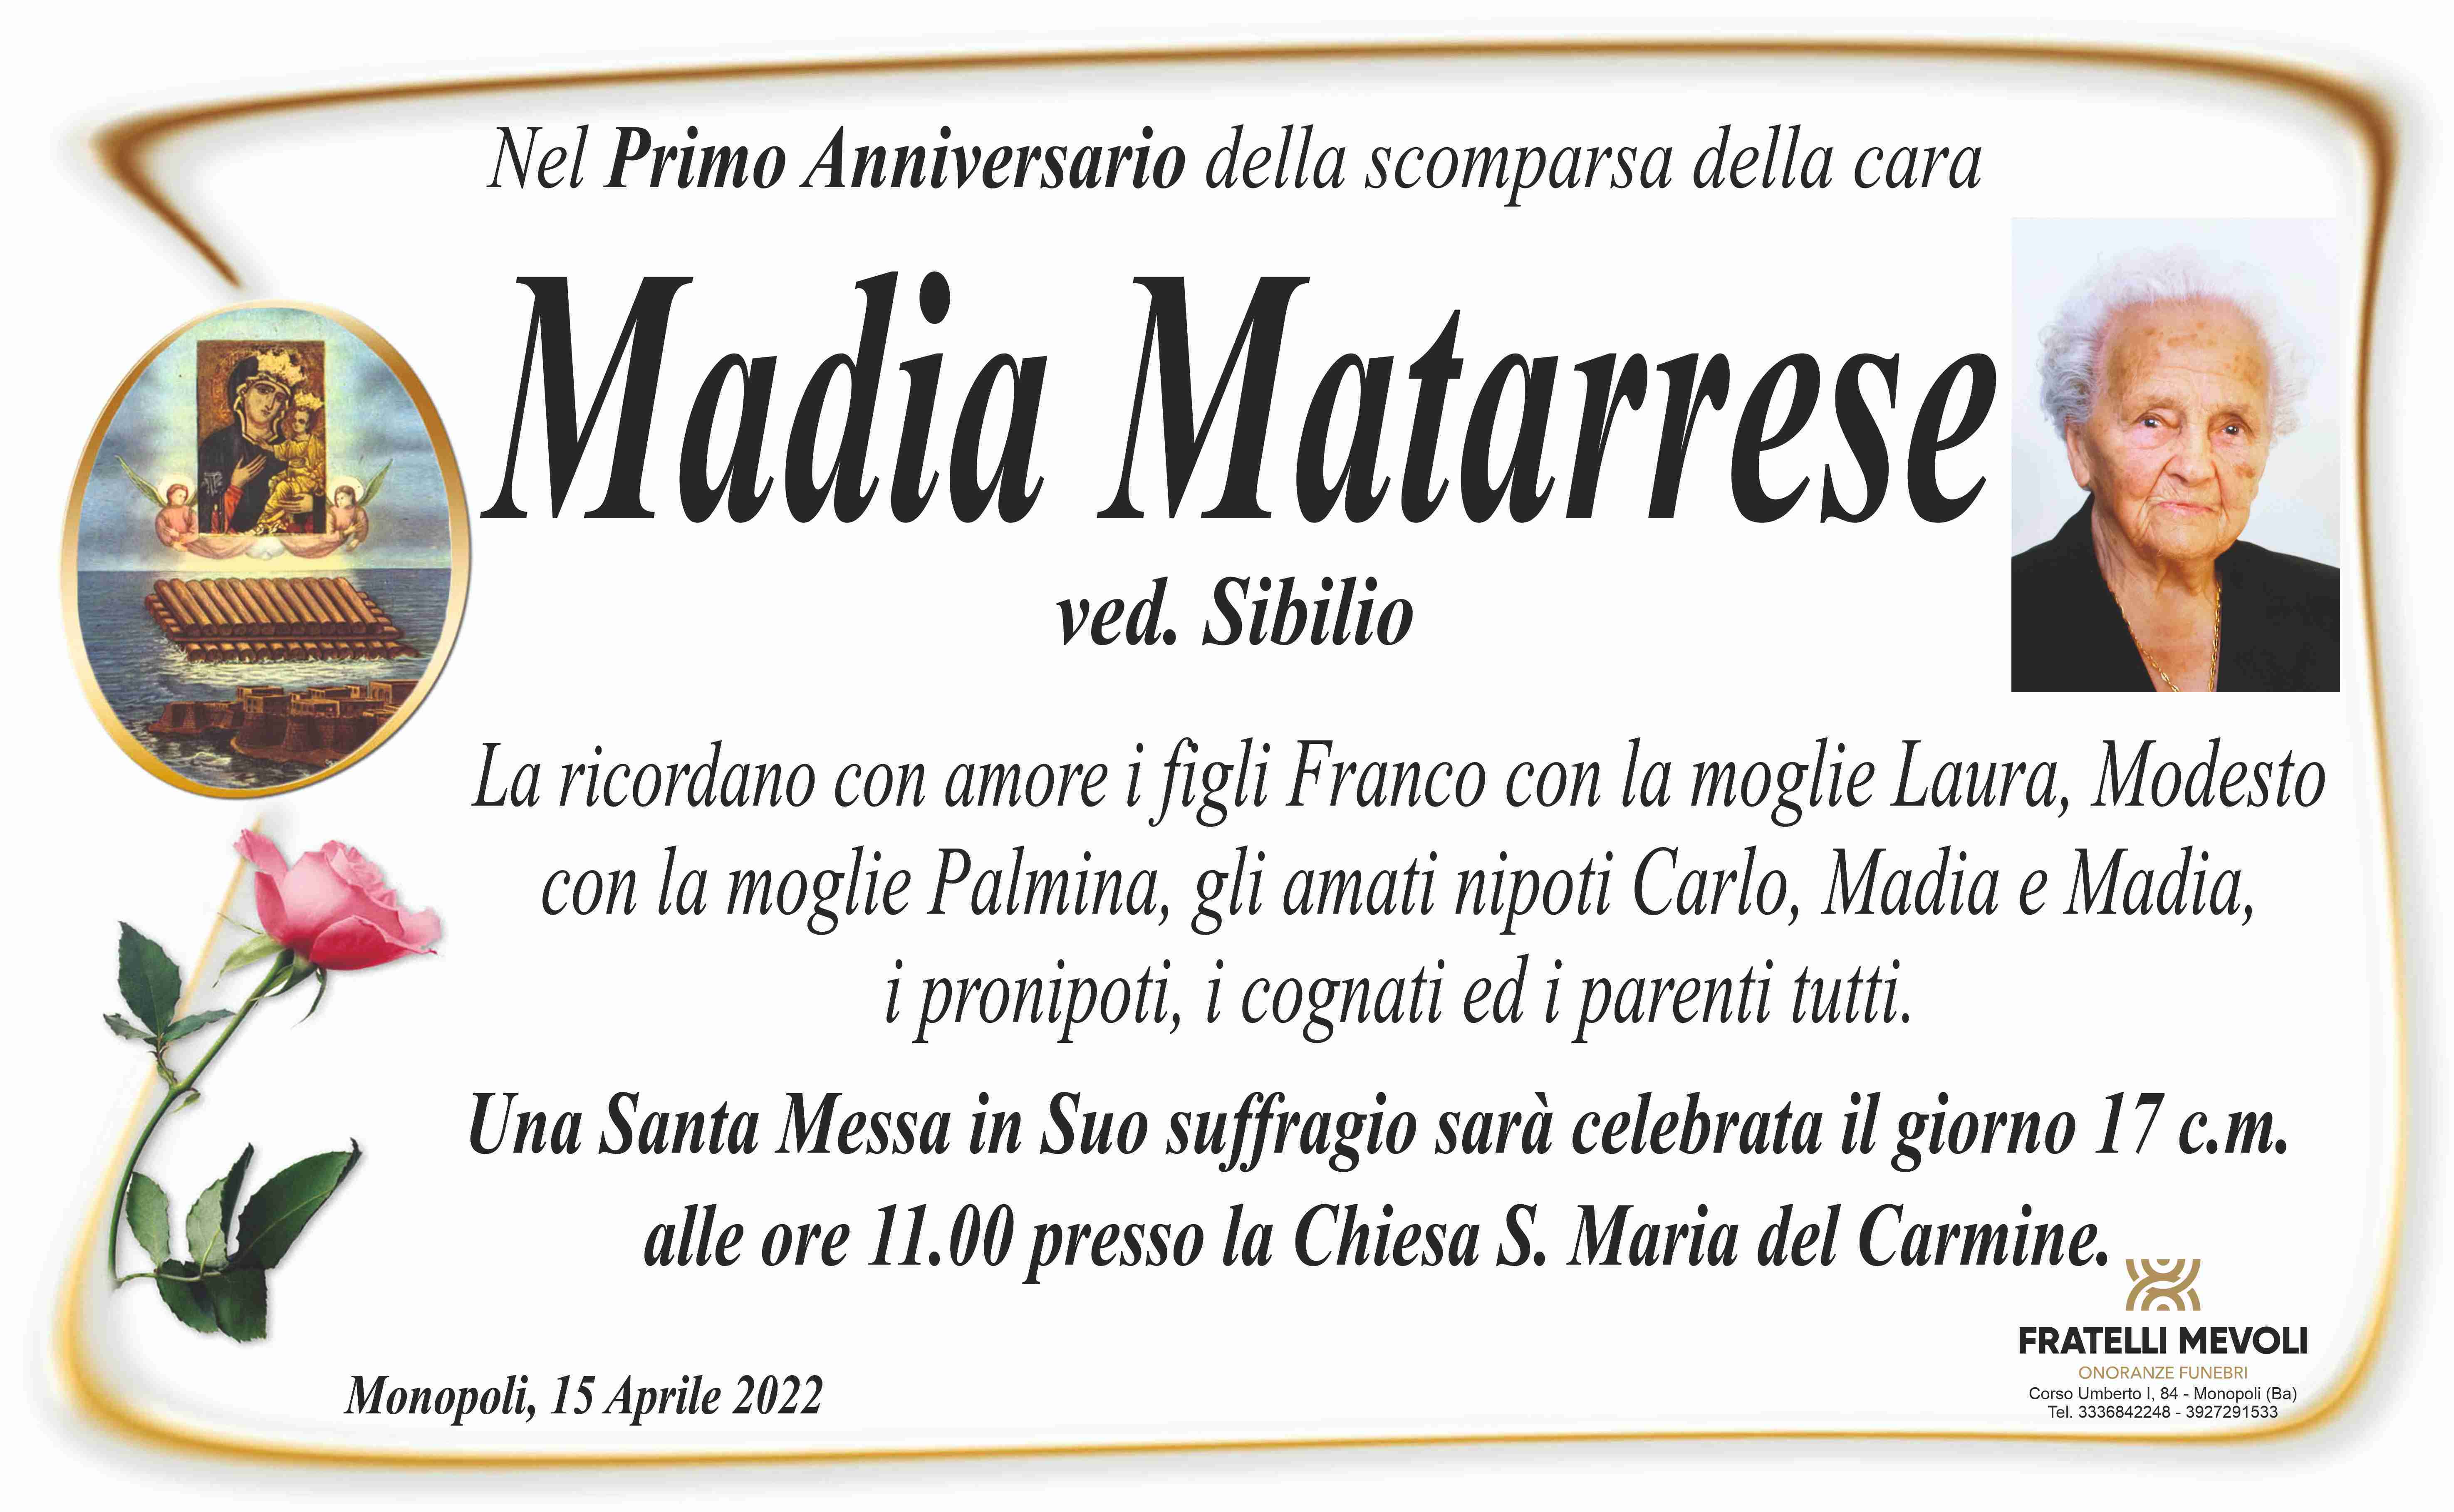 Madia Materrese